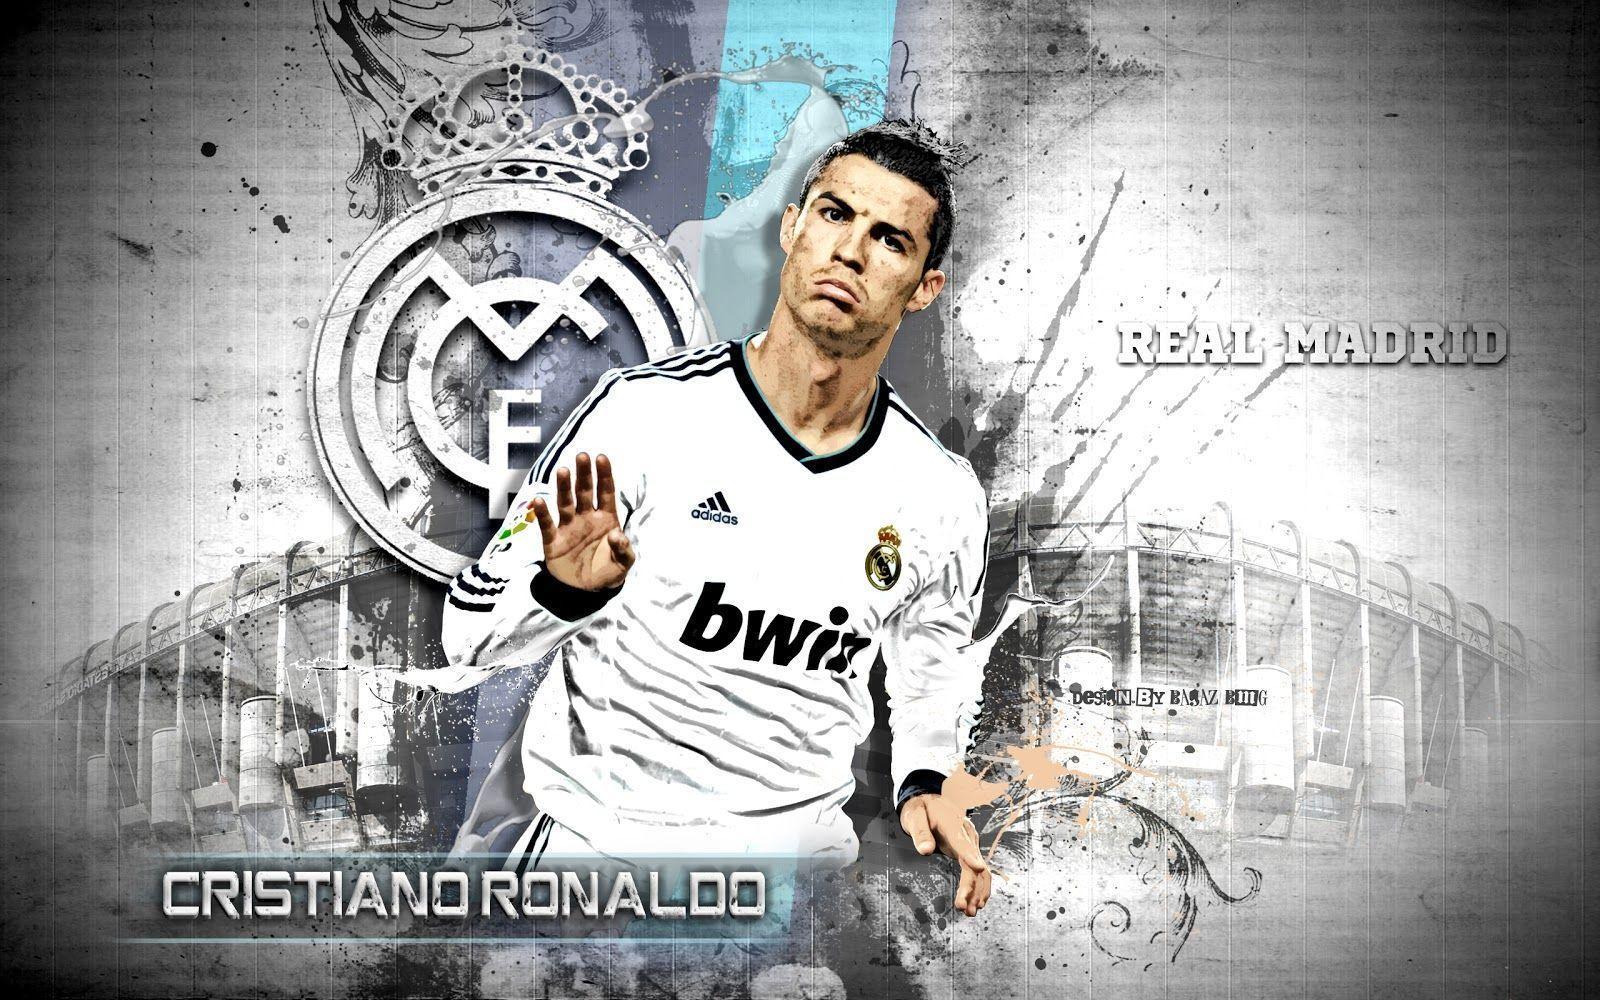 Cristiano Ronaldo Wallpaper Soccer 2014 New Wallpaper